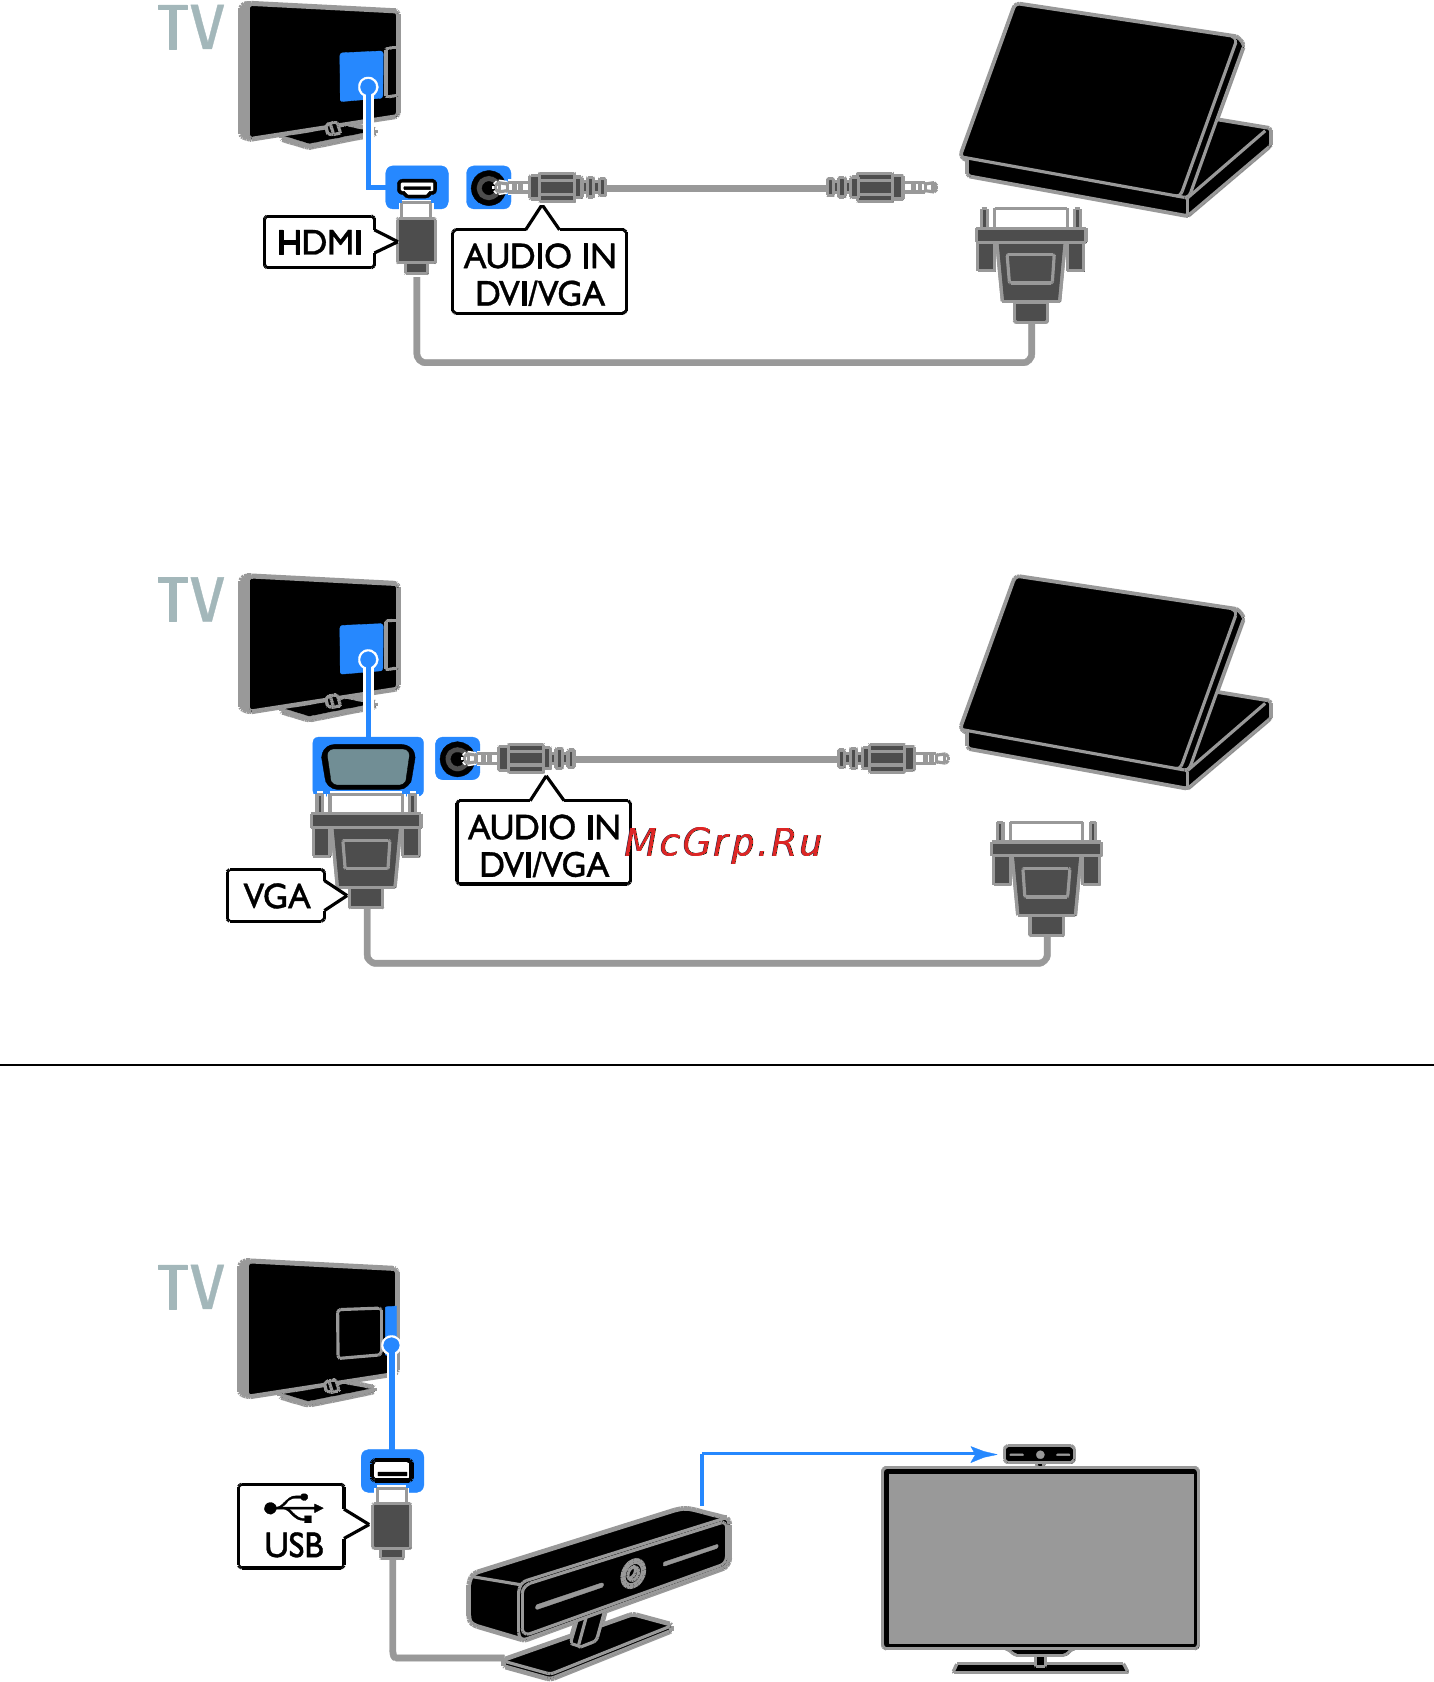 Как включить miracast на windows 10: пошаговая инструкция